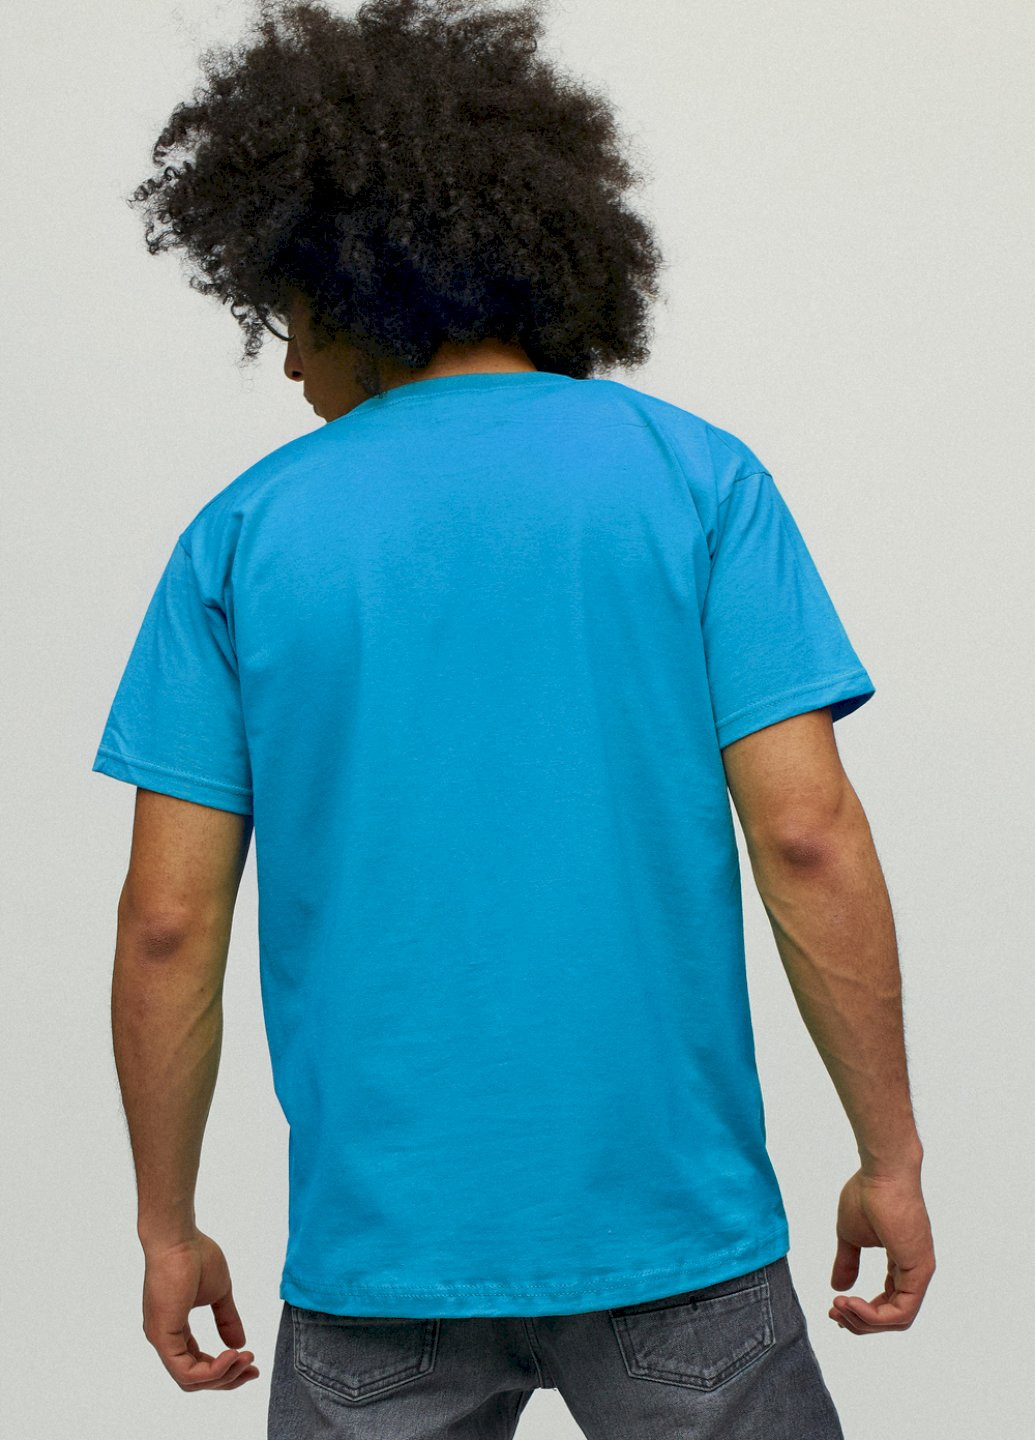 Світло-синя футболка чоловіча YAPPI